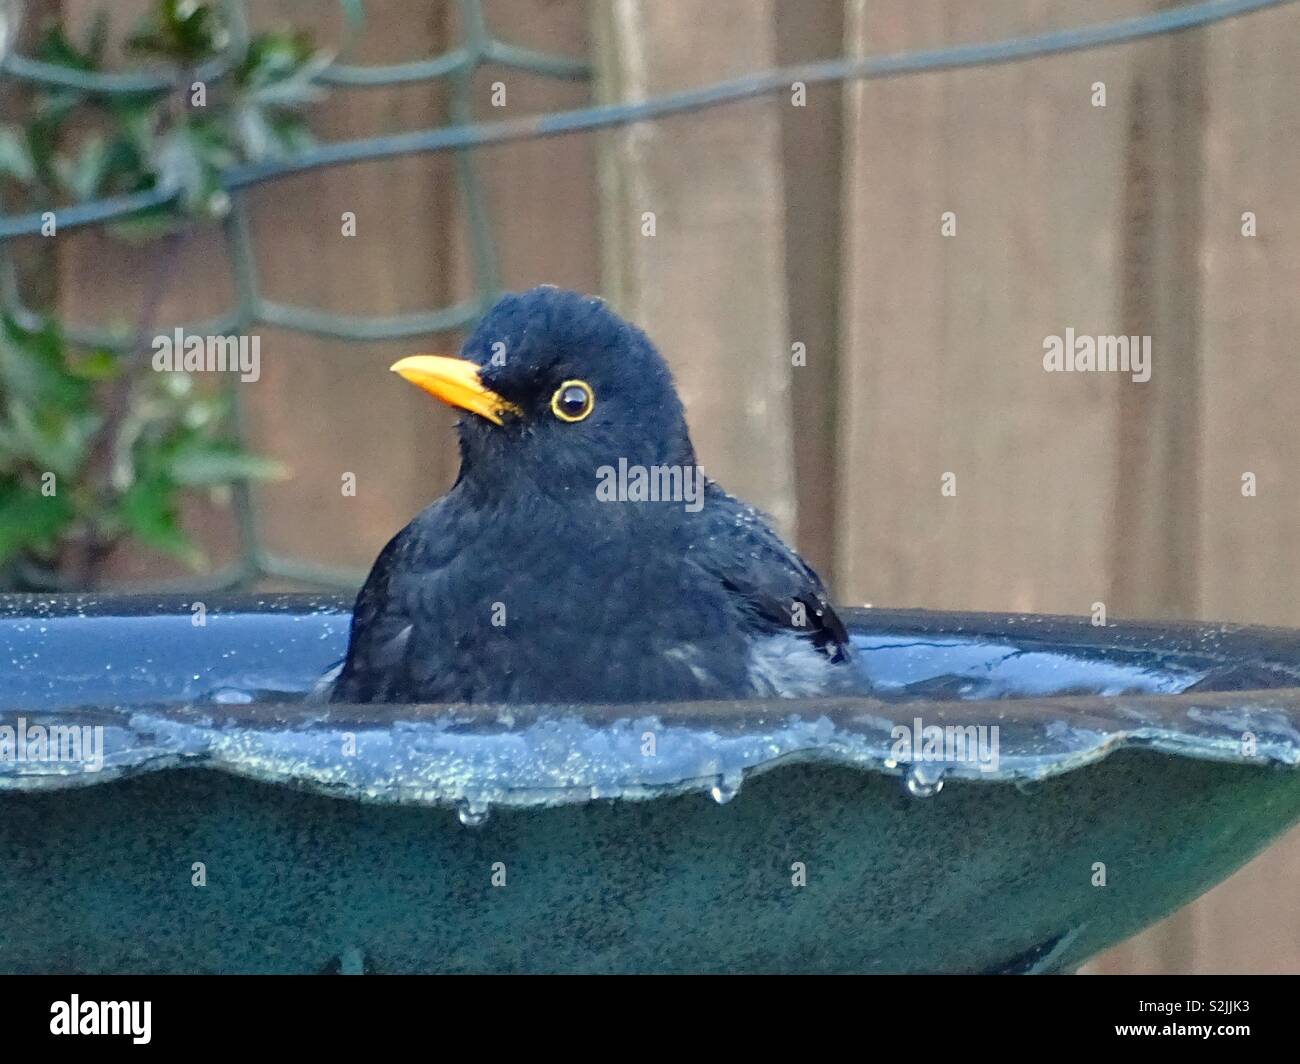 Blackbird in a birdbath Stock Photo